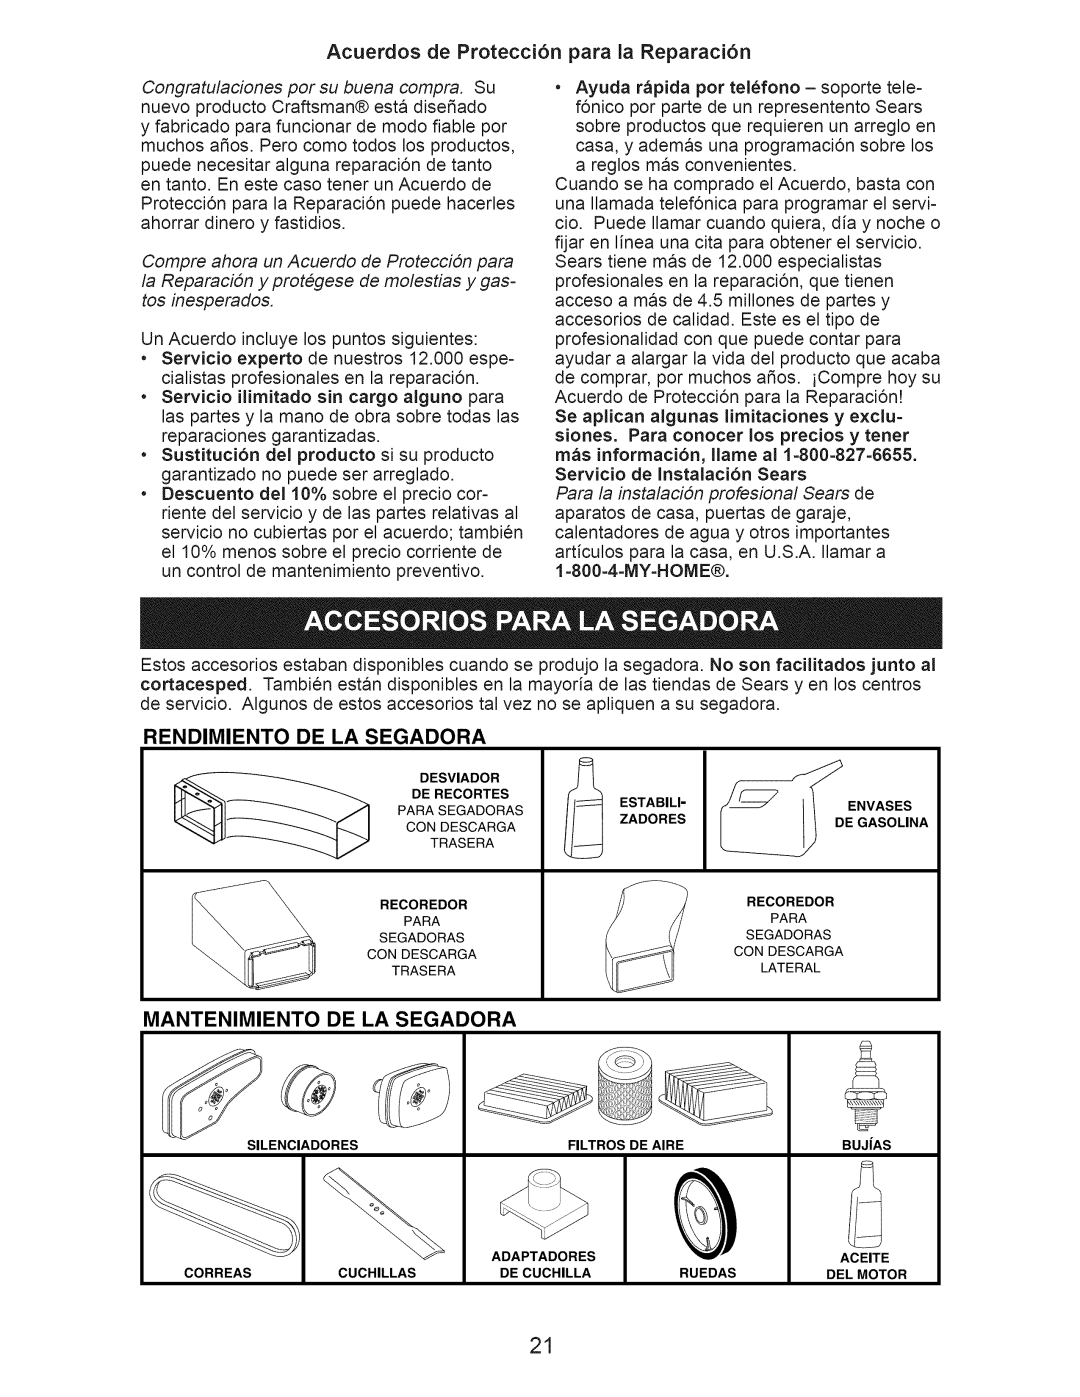 Craftsman 917.389011 manual Acuerdos de Protecci6n para la Reparaci6n, Rendimiento, De La Segadora, Mantenimiento 